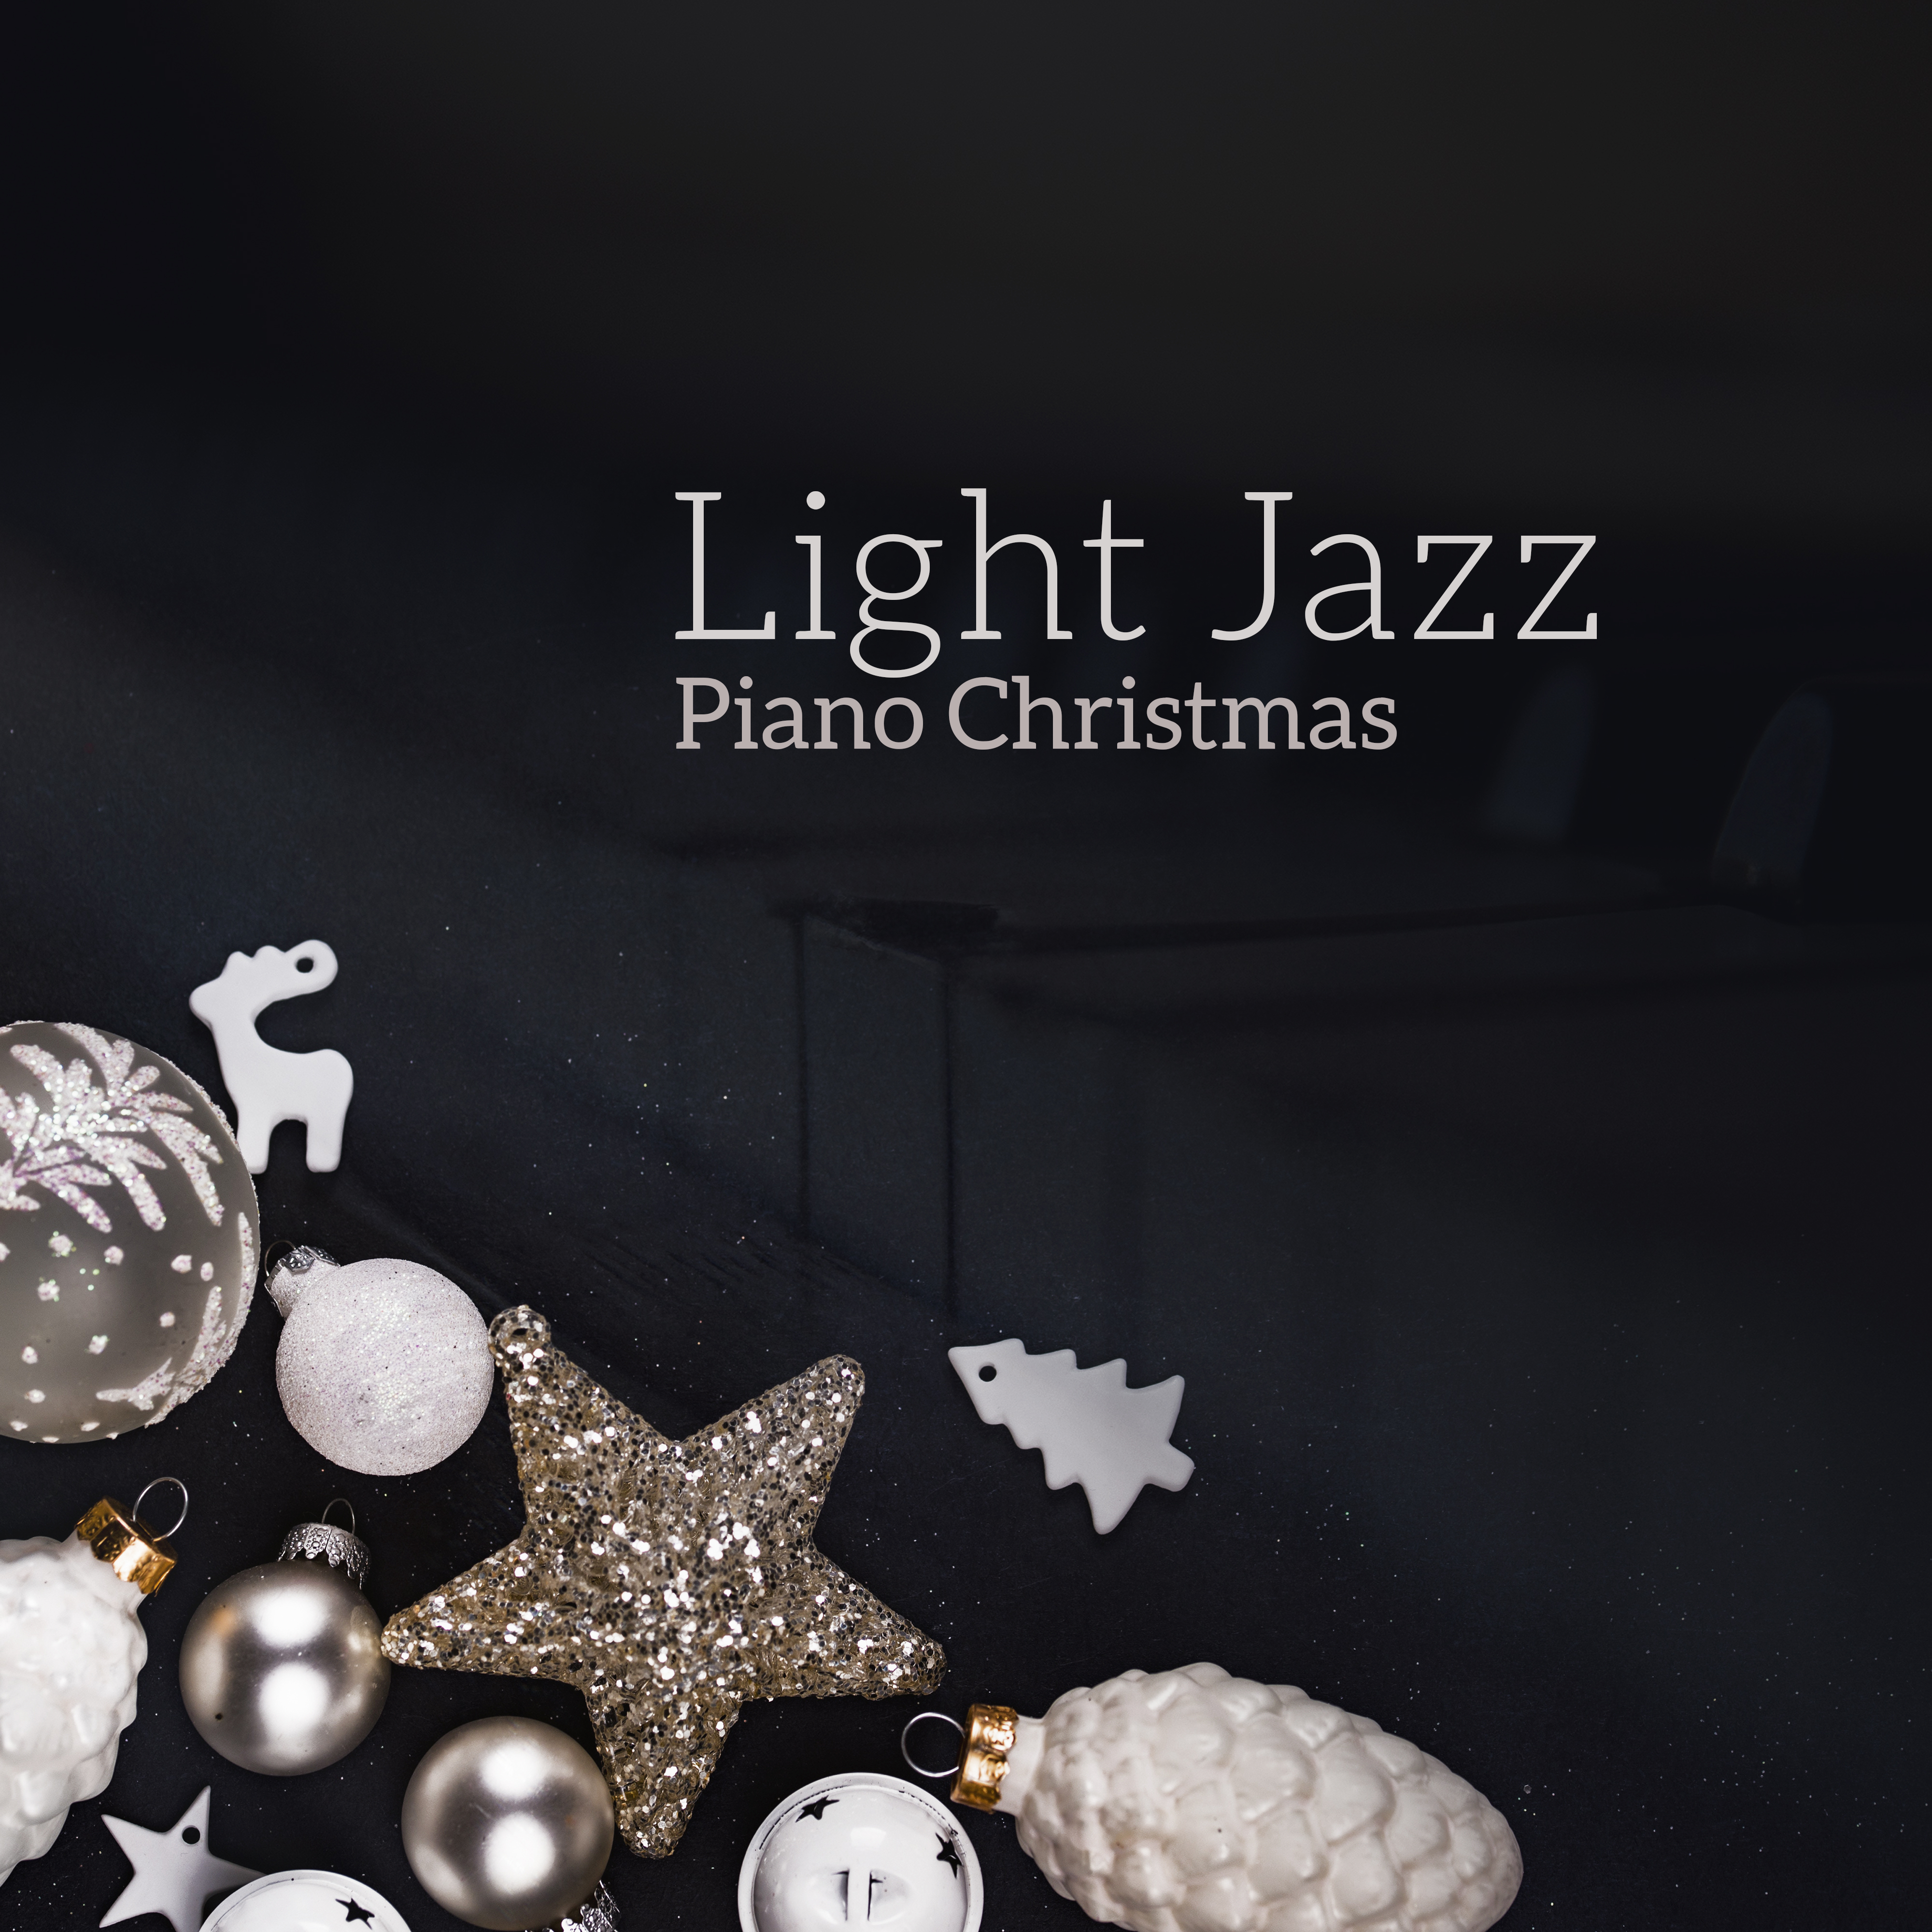 Light Jazz Piano Christmas